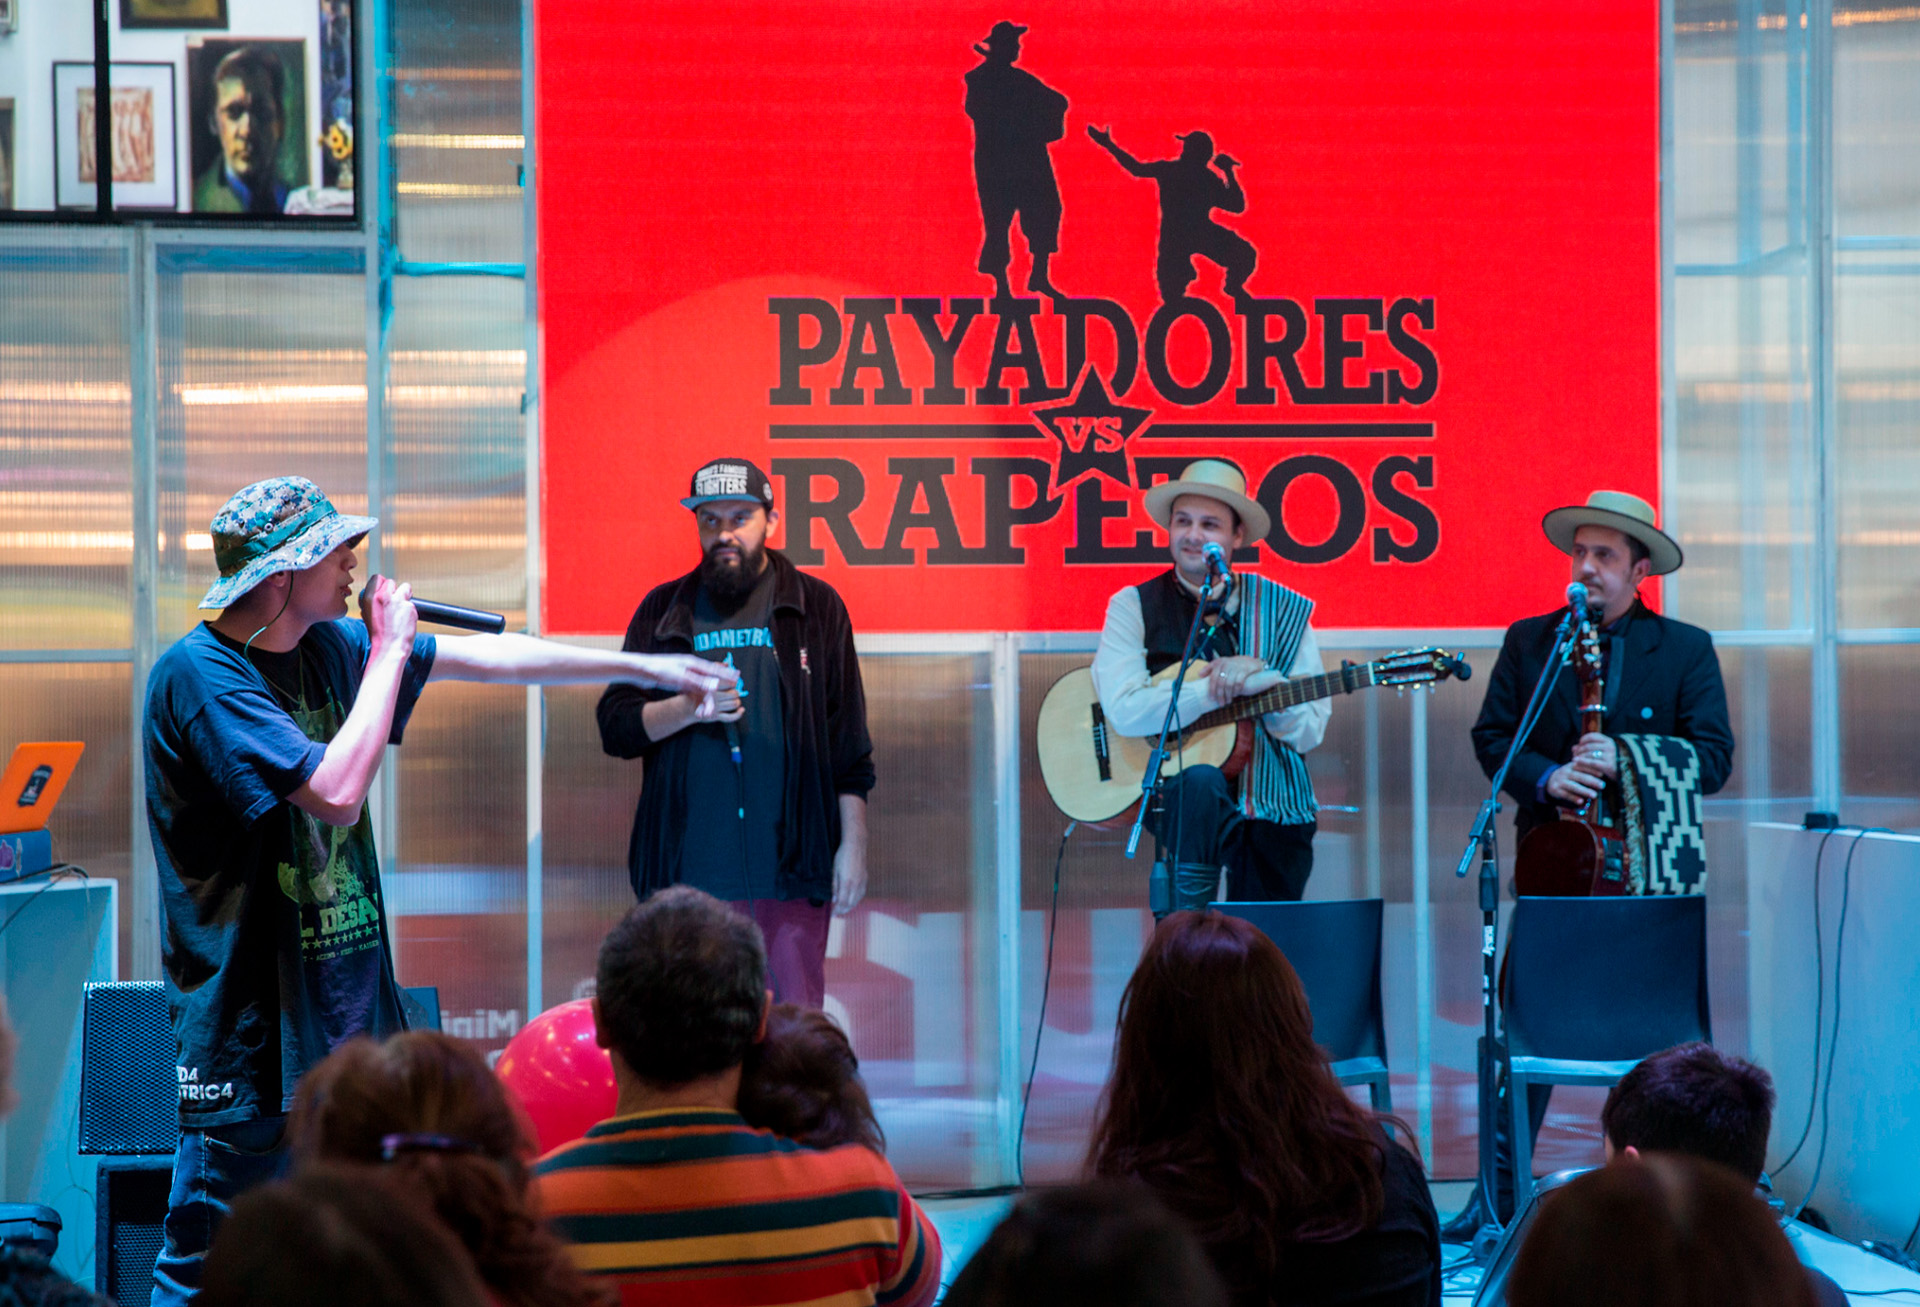 Los payadores Emanuel Gabotto y David Tokar en un show de "Payadores vs. Raperos" en 2016 (foto: Ministerio de Cultura de la Nación)